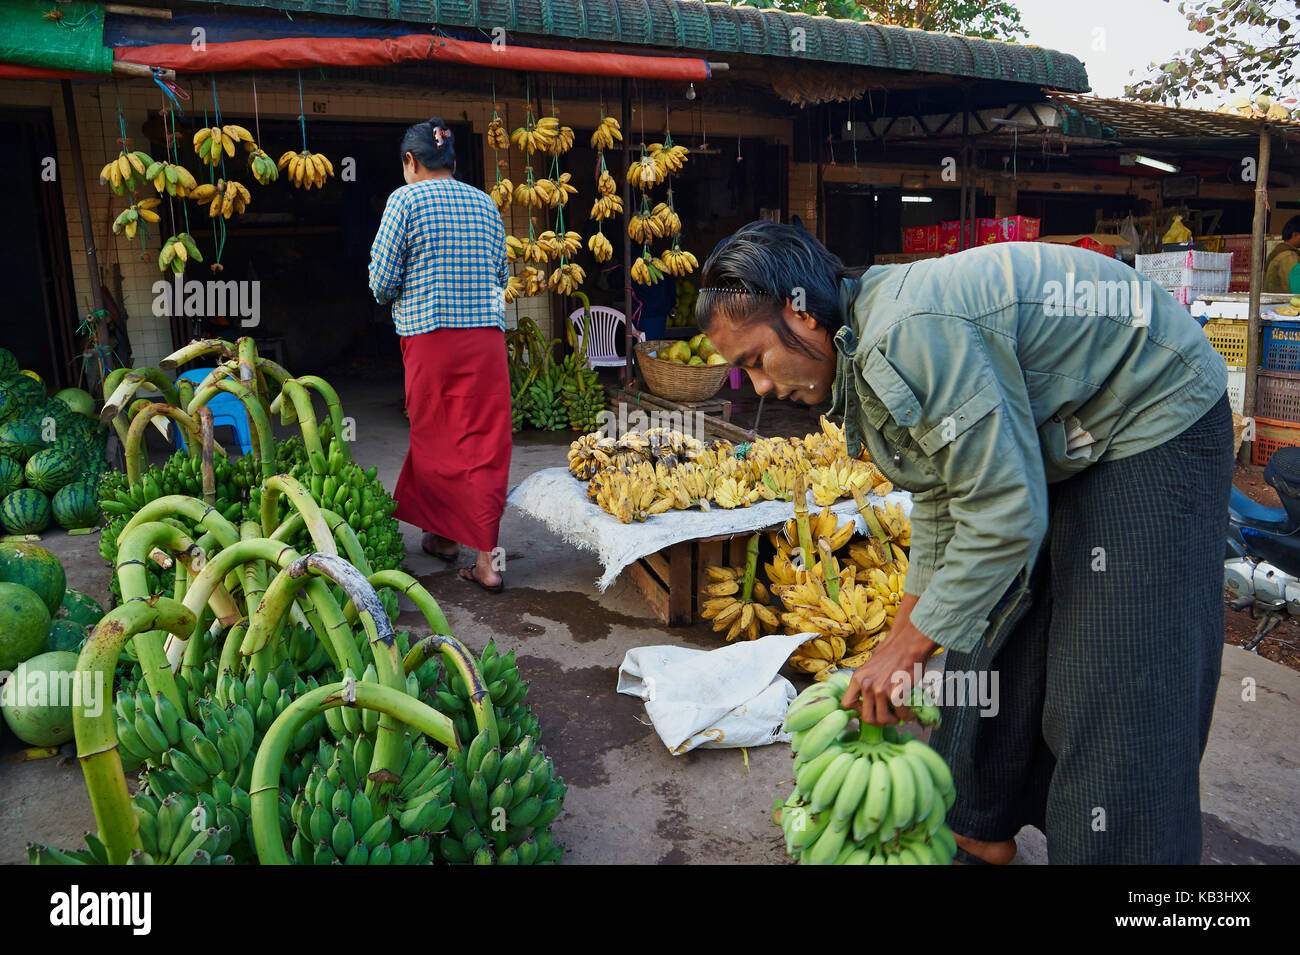 Market stall, Myanmar, Asia, Stock Photo